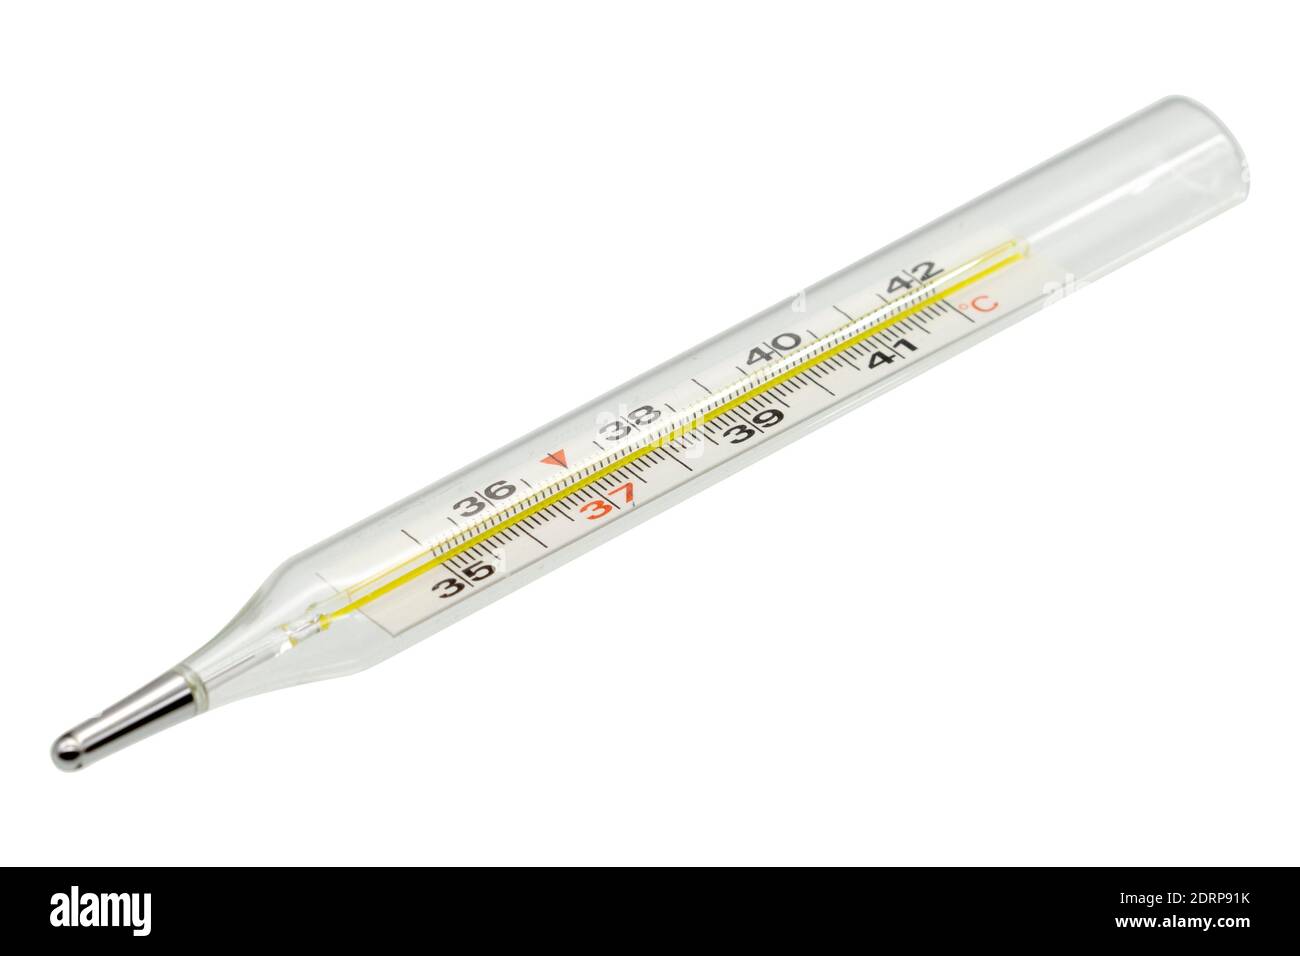 Termometro a mercurio per uso medico isolato su sfondo bianco Foto Stock